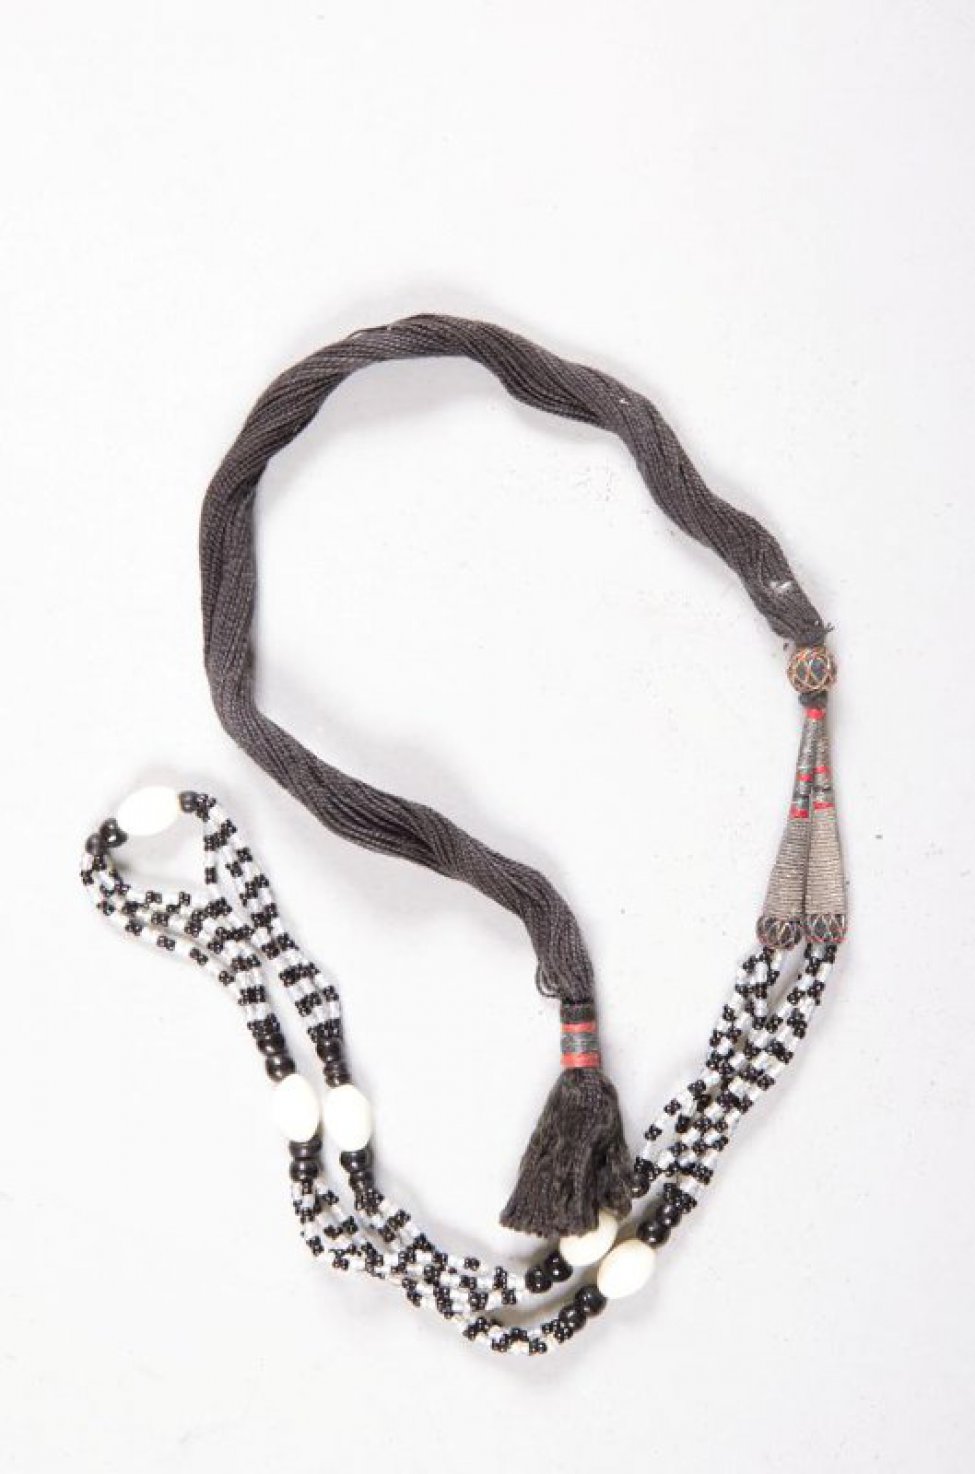 Четыре нитки белого и черного бисера с пятью большими белыми бусинками укреплены на черном шнурке с кисточкой.